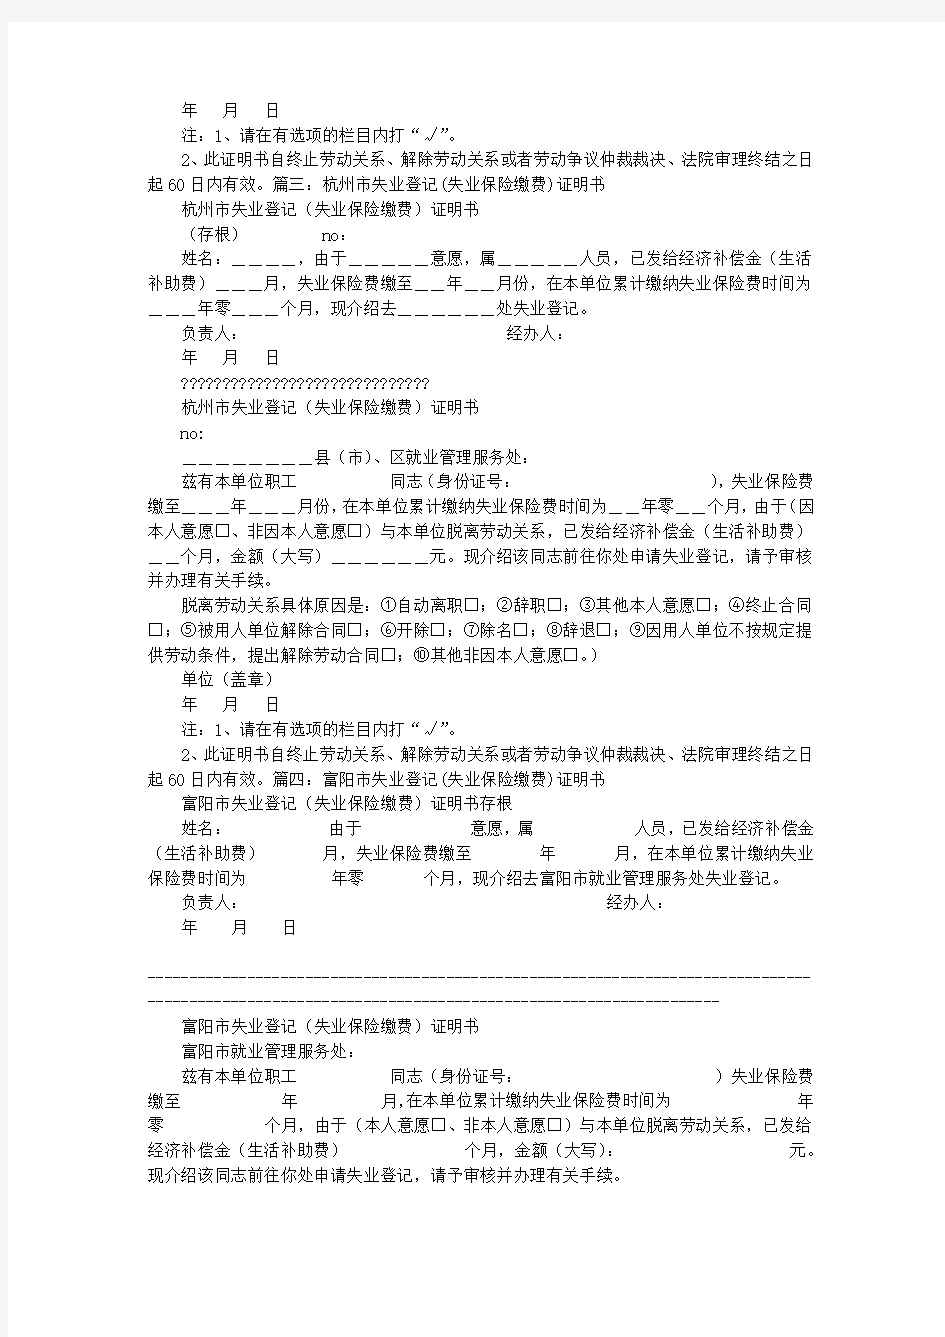 杭州市失业登记证明书